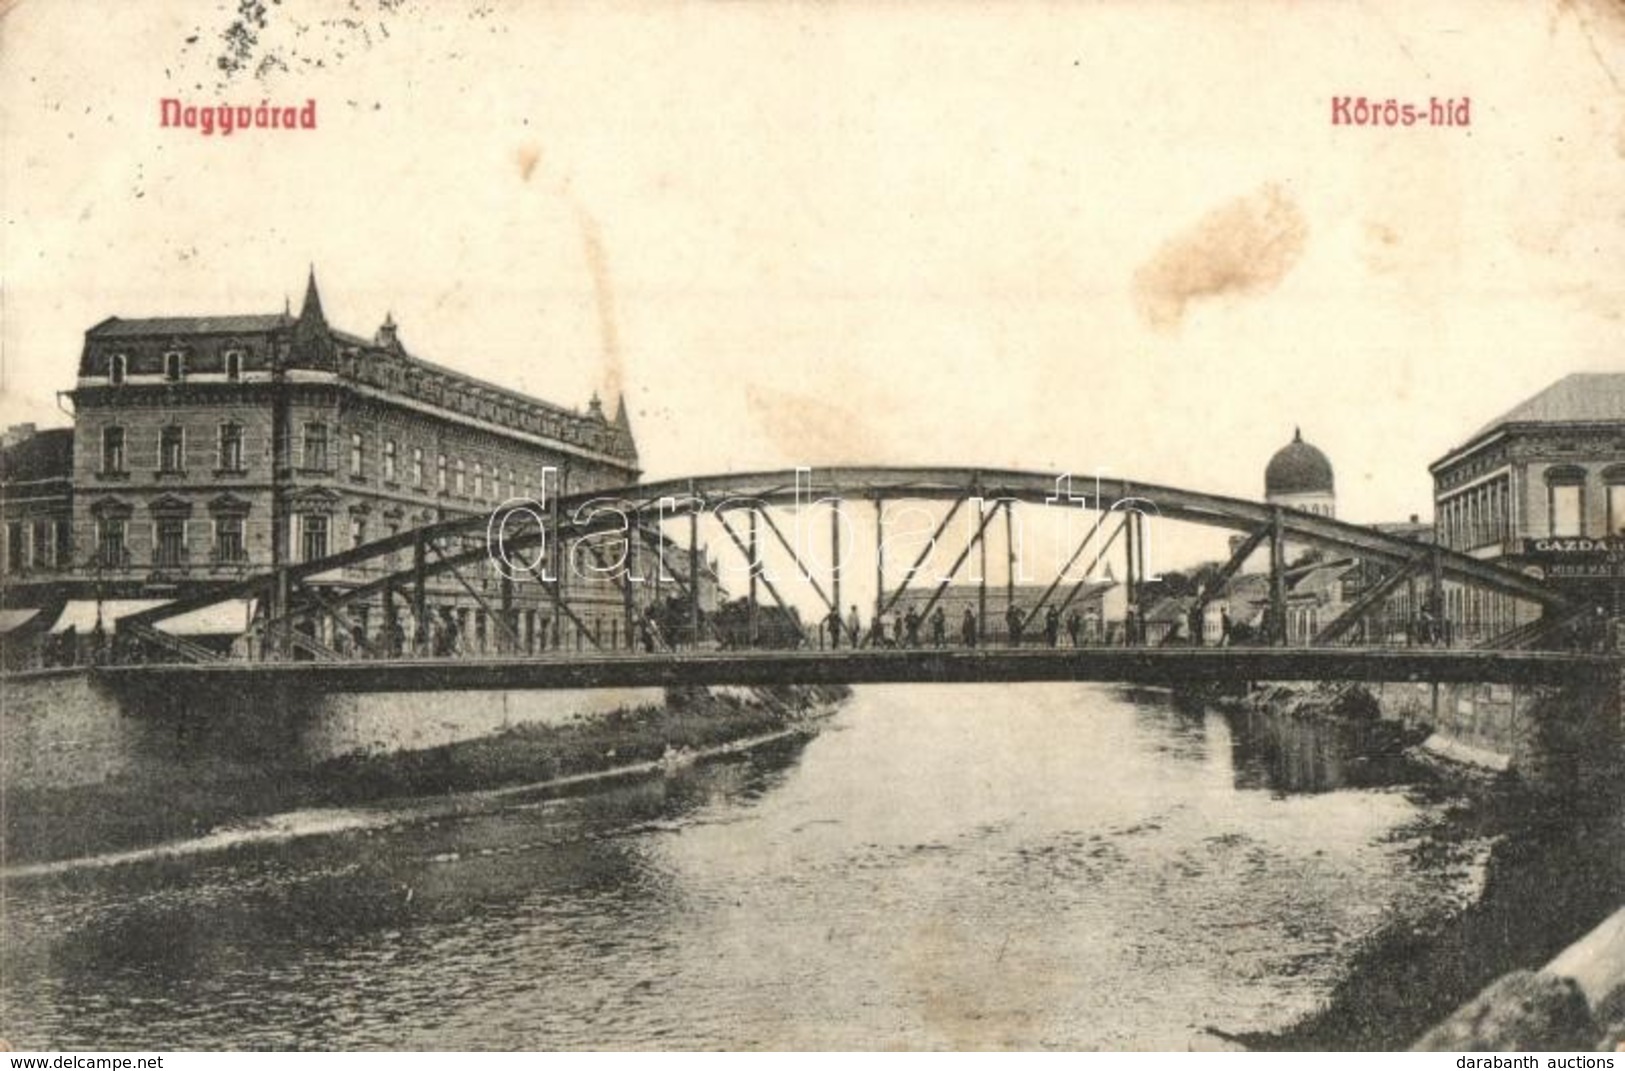 T2/T3 1910 Nagyvárad, Oradea; Körös Híd, Zsinagóga, üzletek / Cris River Bridge, Synagogue, Shops (EK) - Unclassified